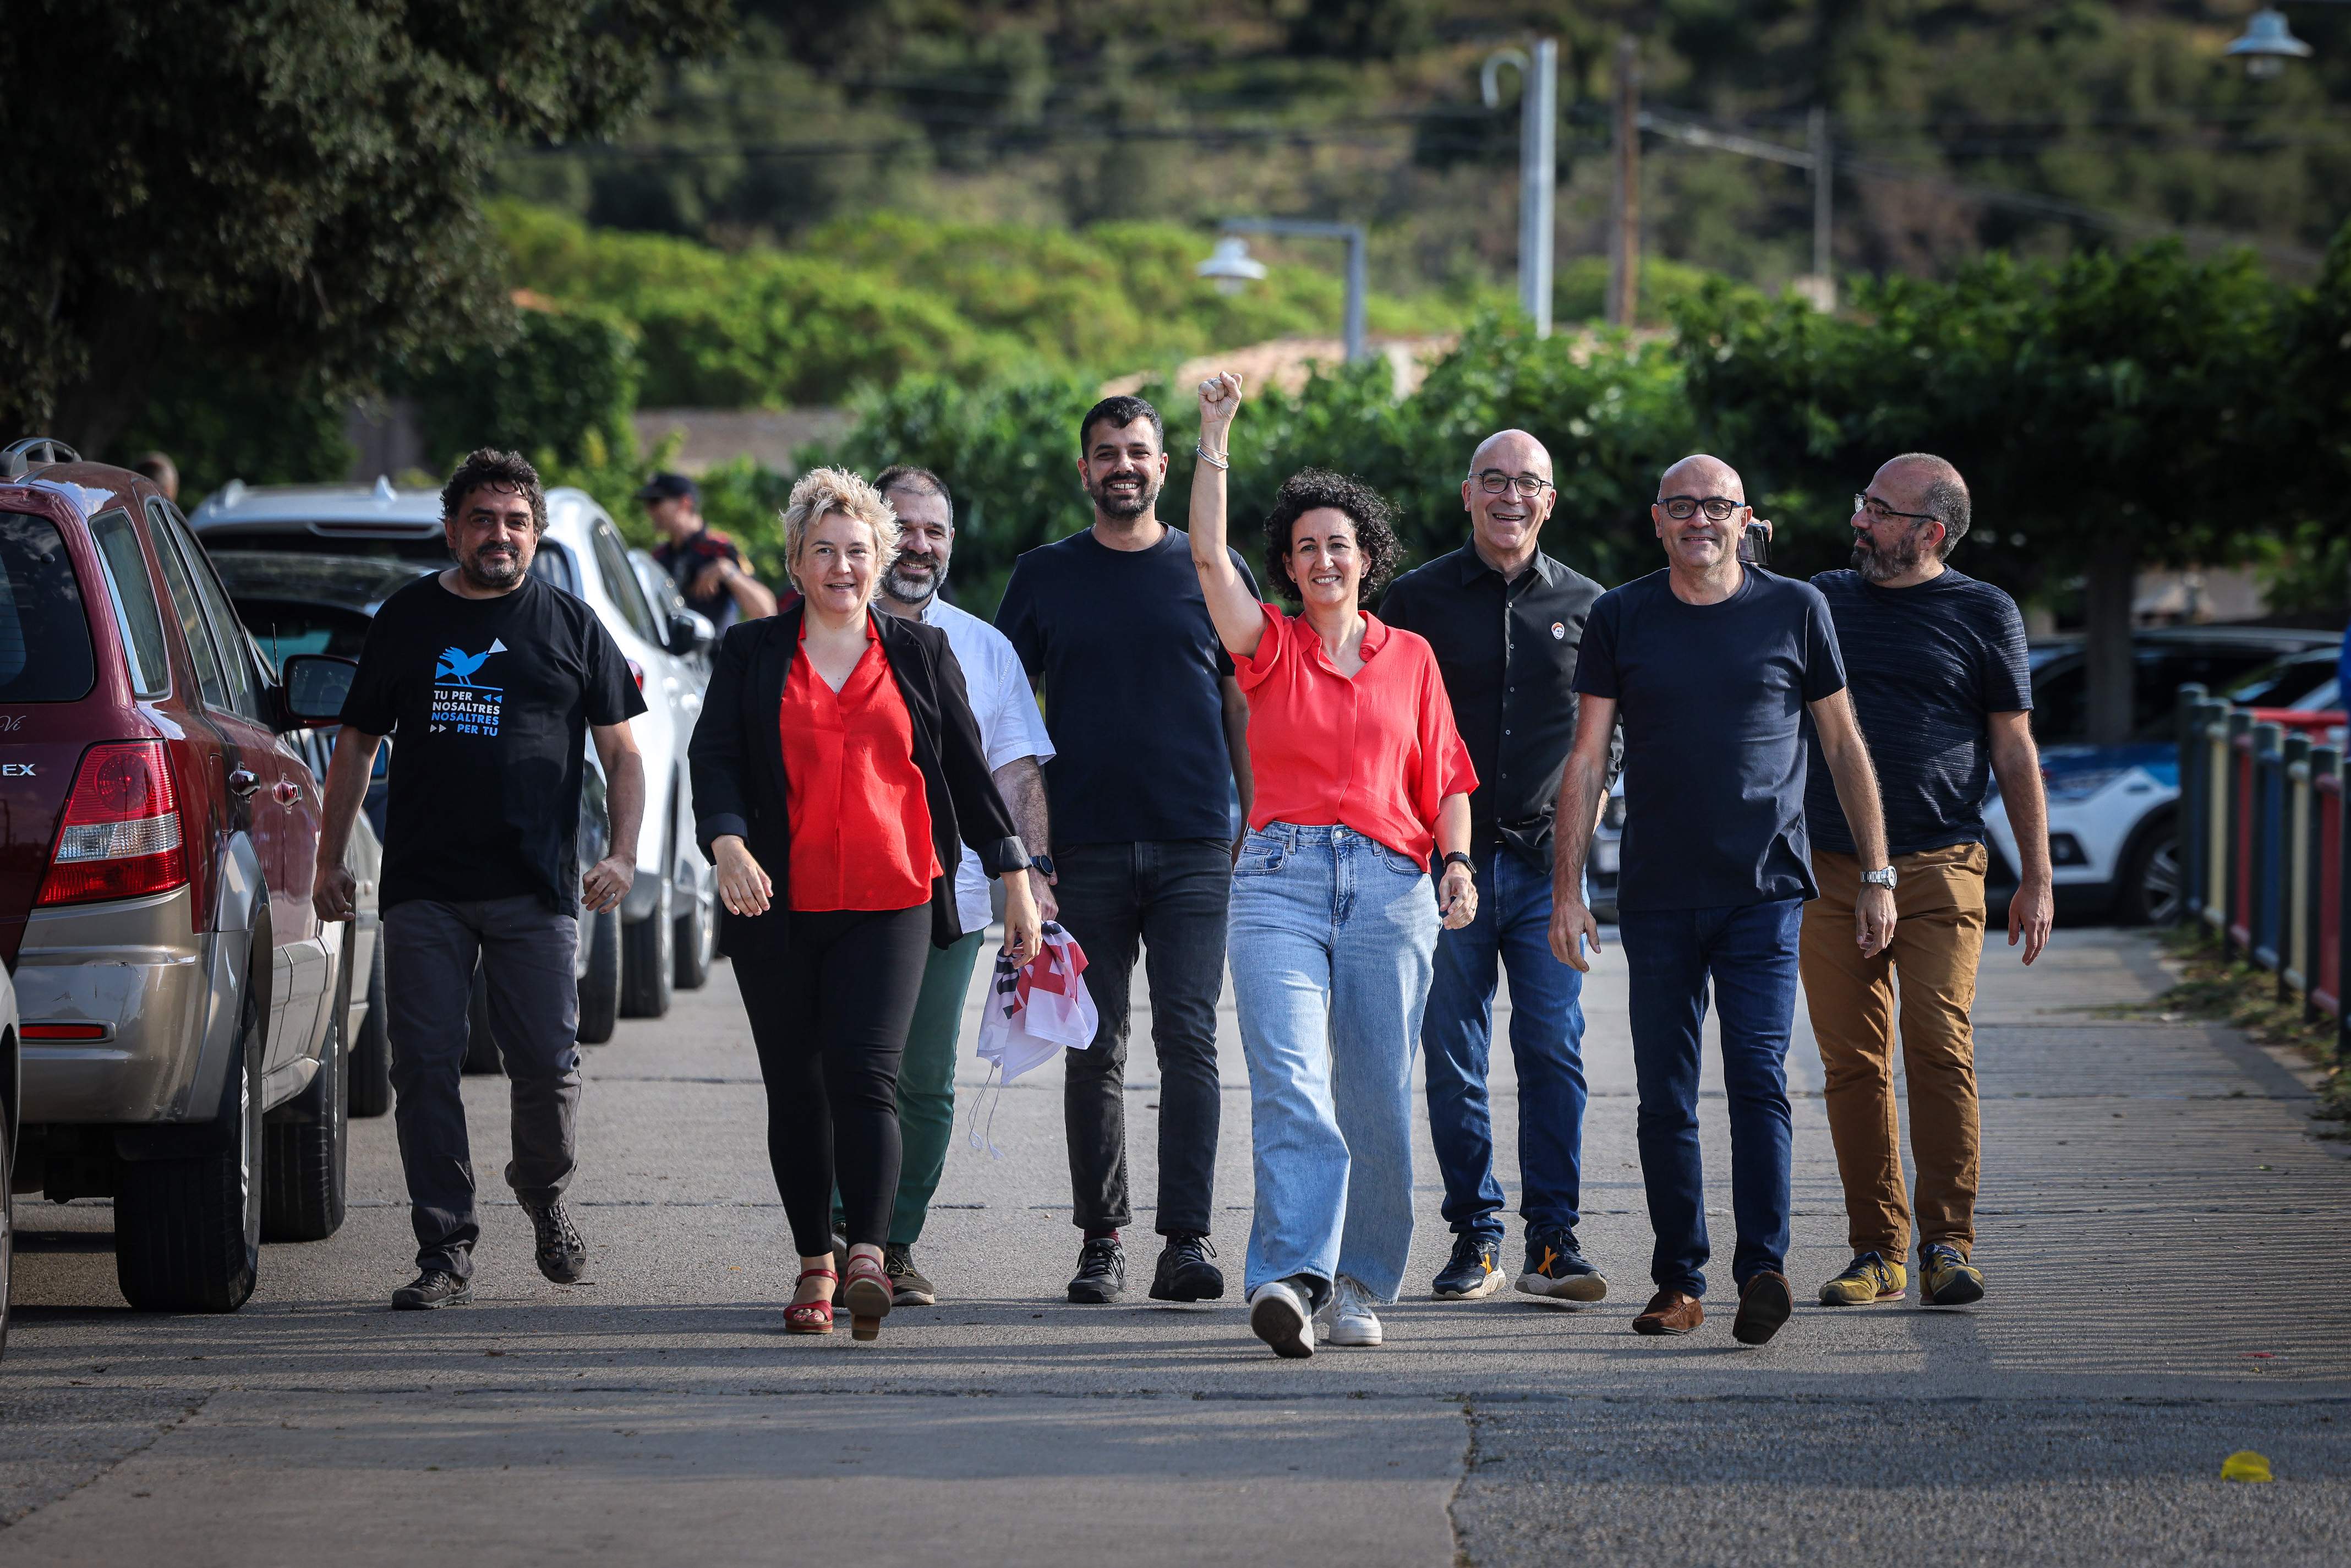 Marta Rovira, en tornar de l'exili: "Això és una victòria, hem vingut a acabar la feina que vam començar"